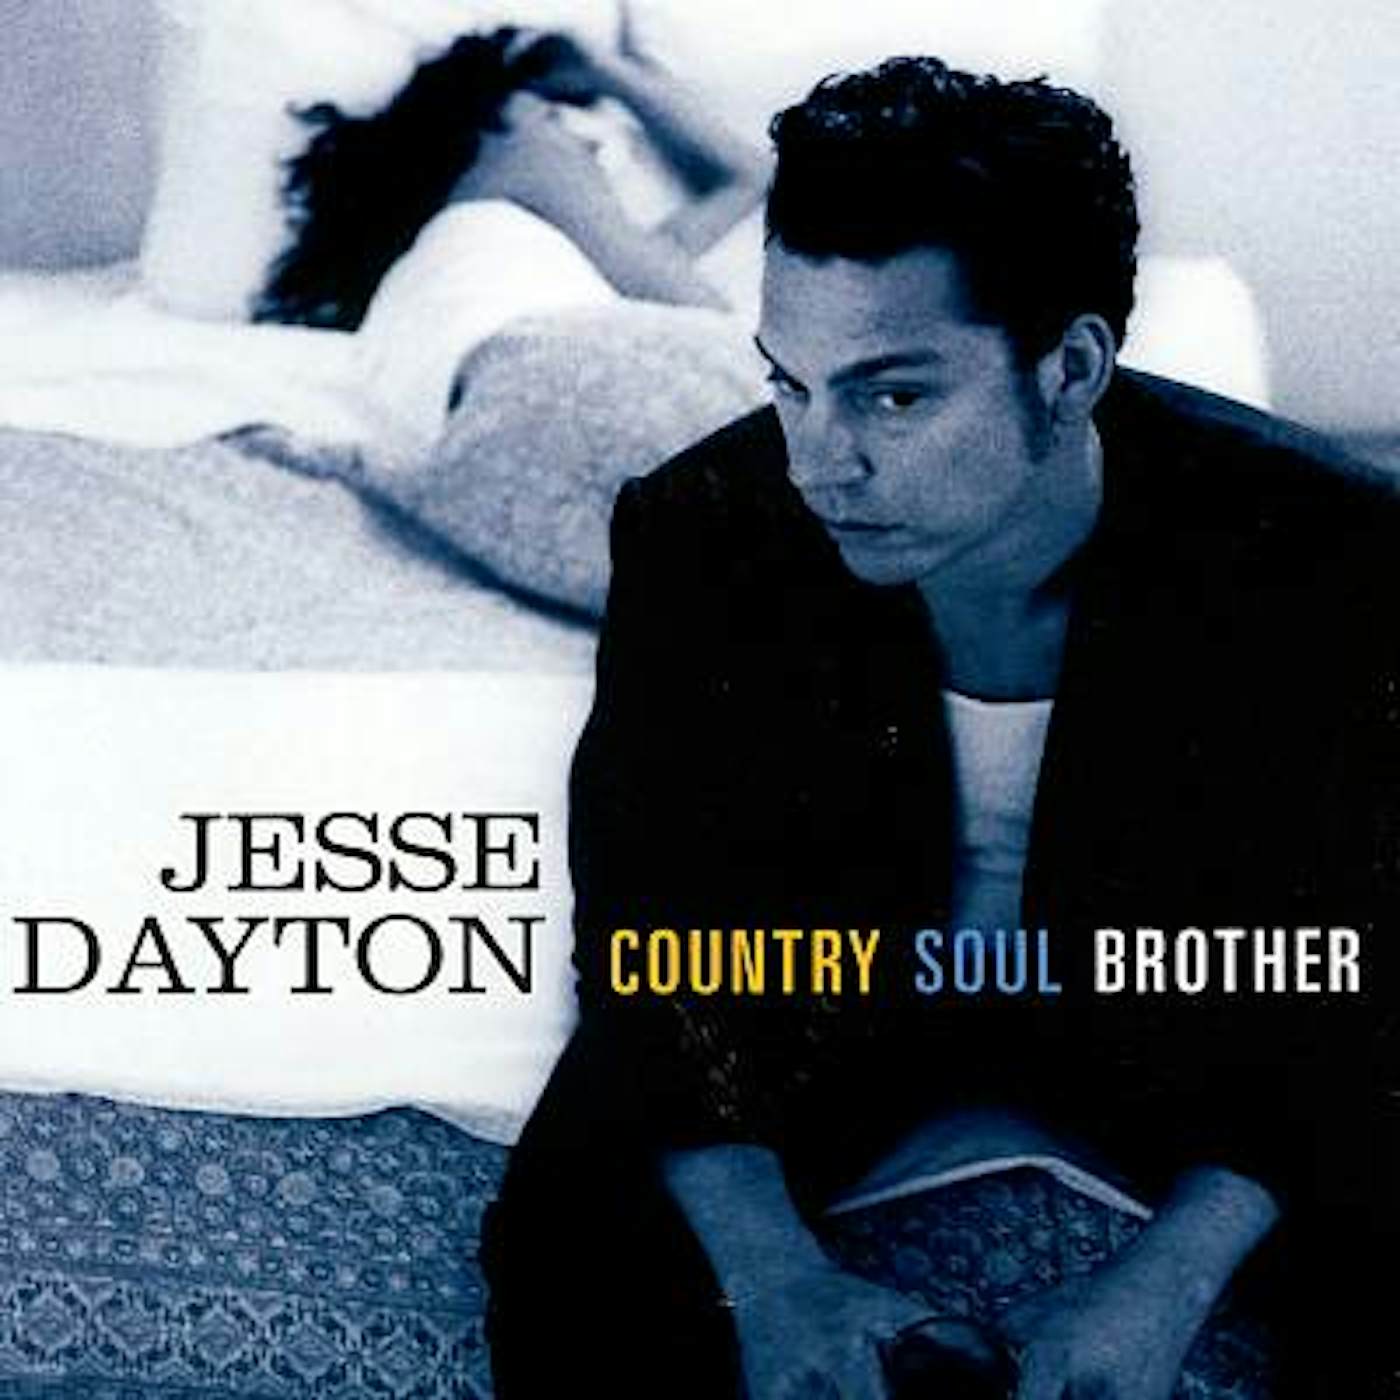 Jesse Dayton COUNTRY SOUL BROTHER CD